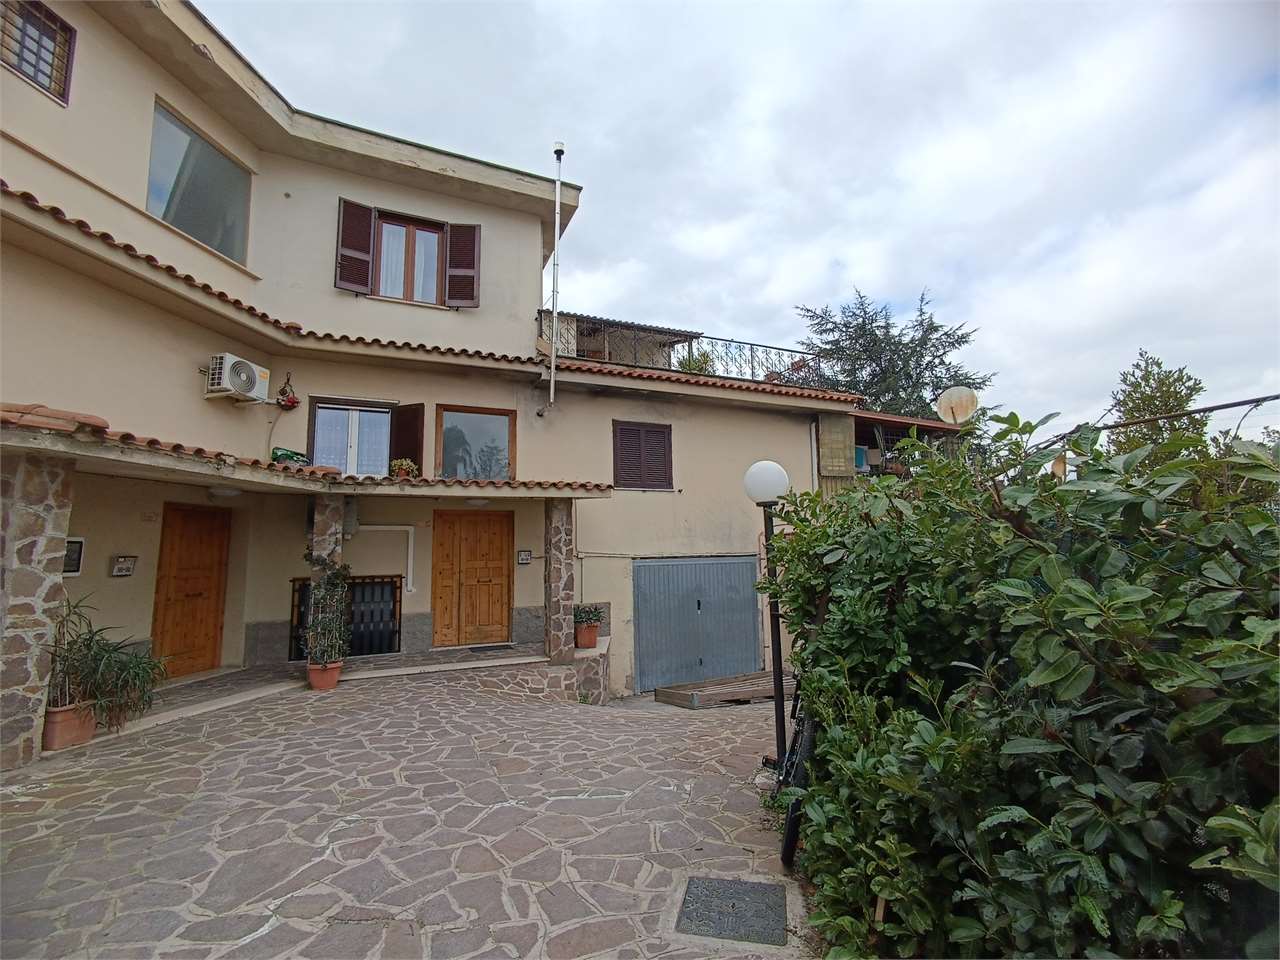 Appartamento in vendita a Monte Compatri, 3 locali, zona Zona: Laghetto, prezzo € 95.000 | CambioCasa.it